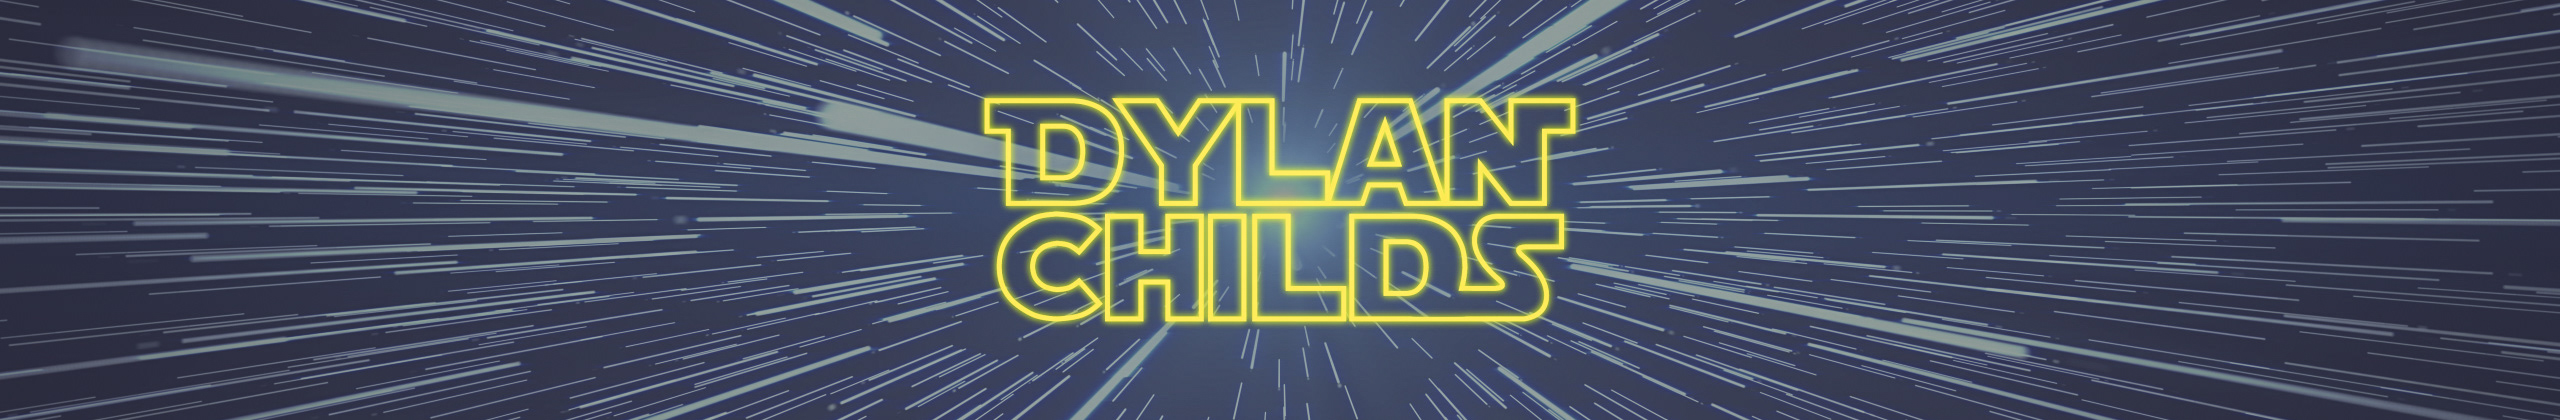 Dylan Childss profilbanner